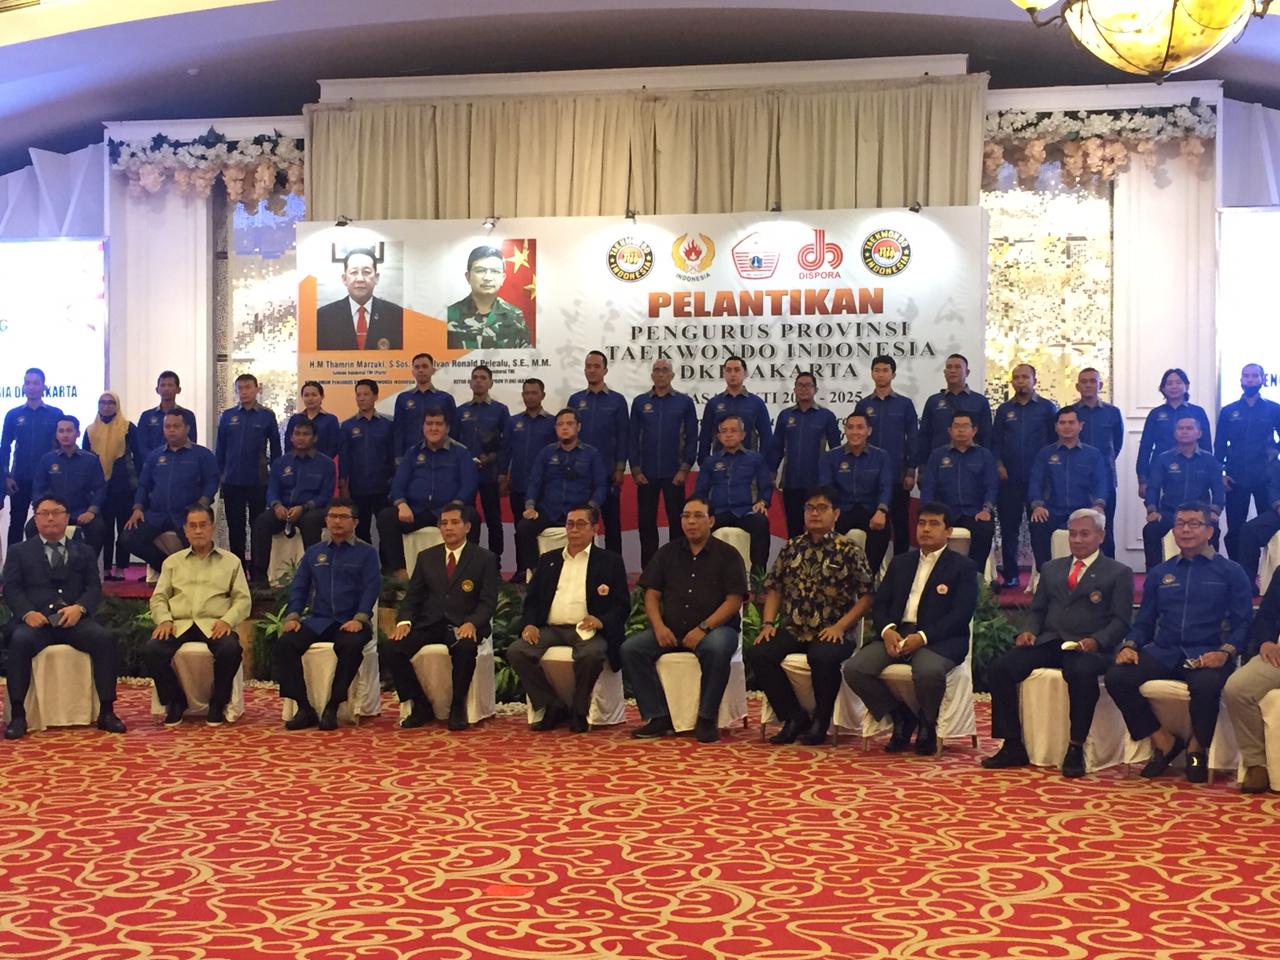 Pelantikan Pengurus Taekwondo Indonesia DKI Jakarta Berlangsung Sukses